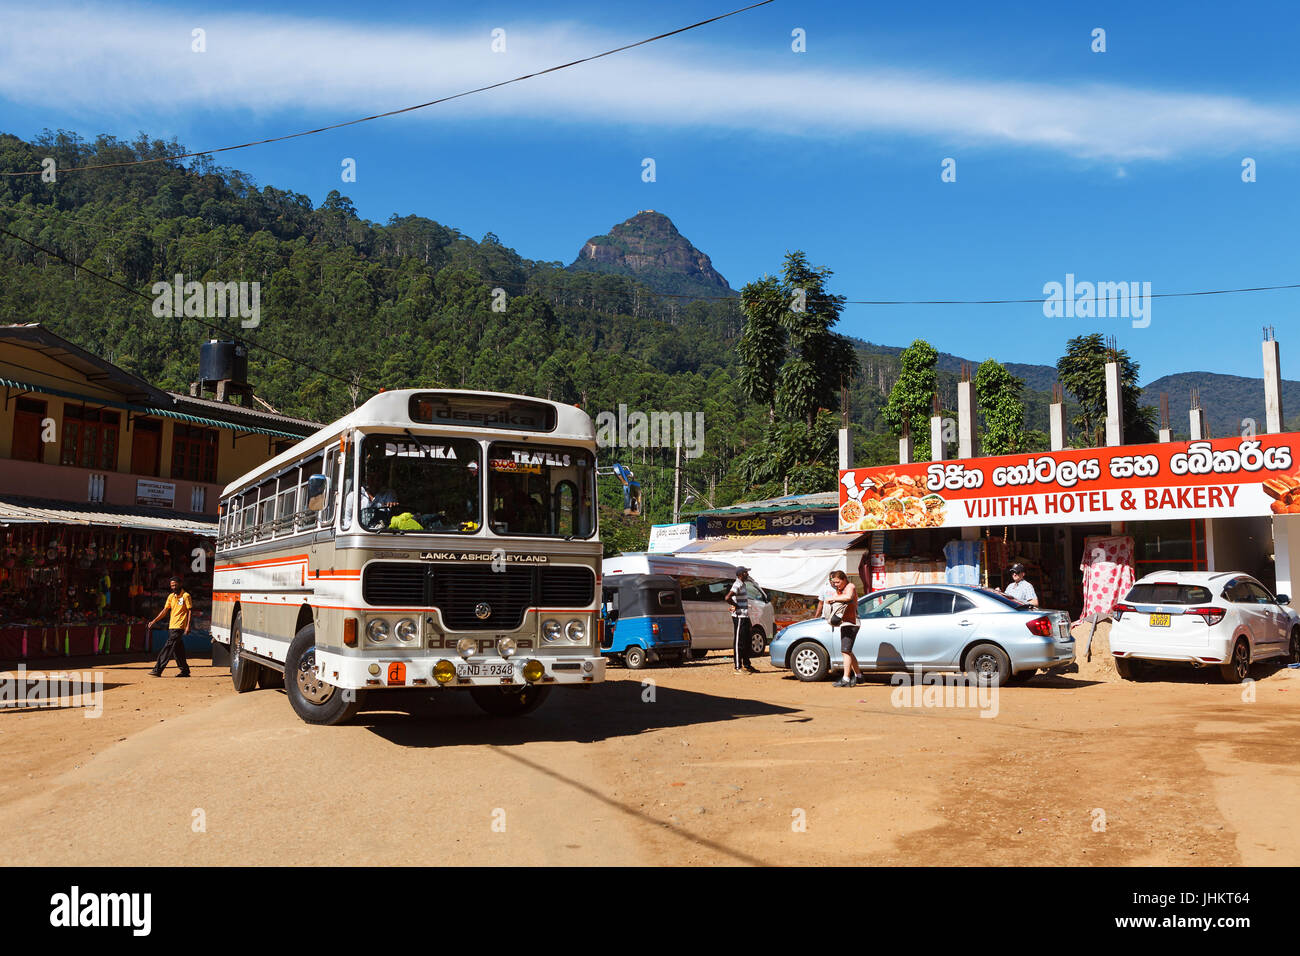 DALHOUISIE, SRI LANKA, 11 mars 2016 à la station de bus, Adam's Peak visible à l'arrière-plan Banque D'Images